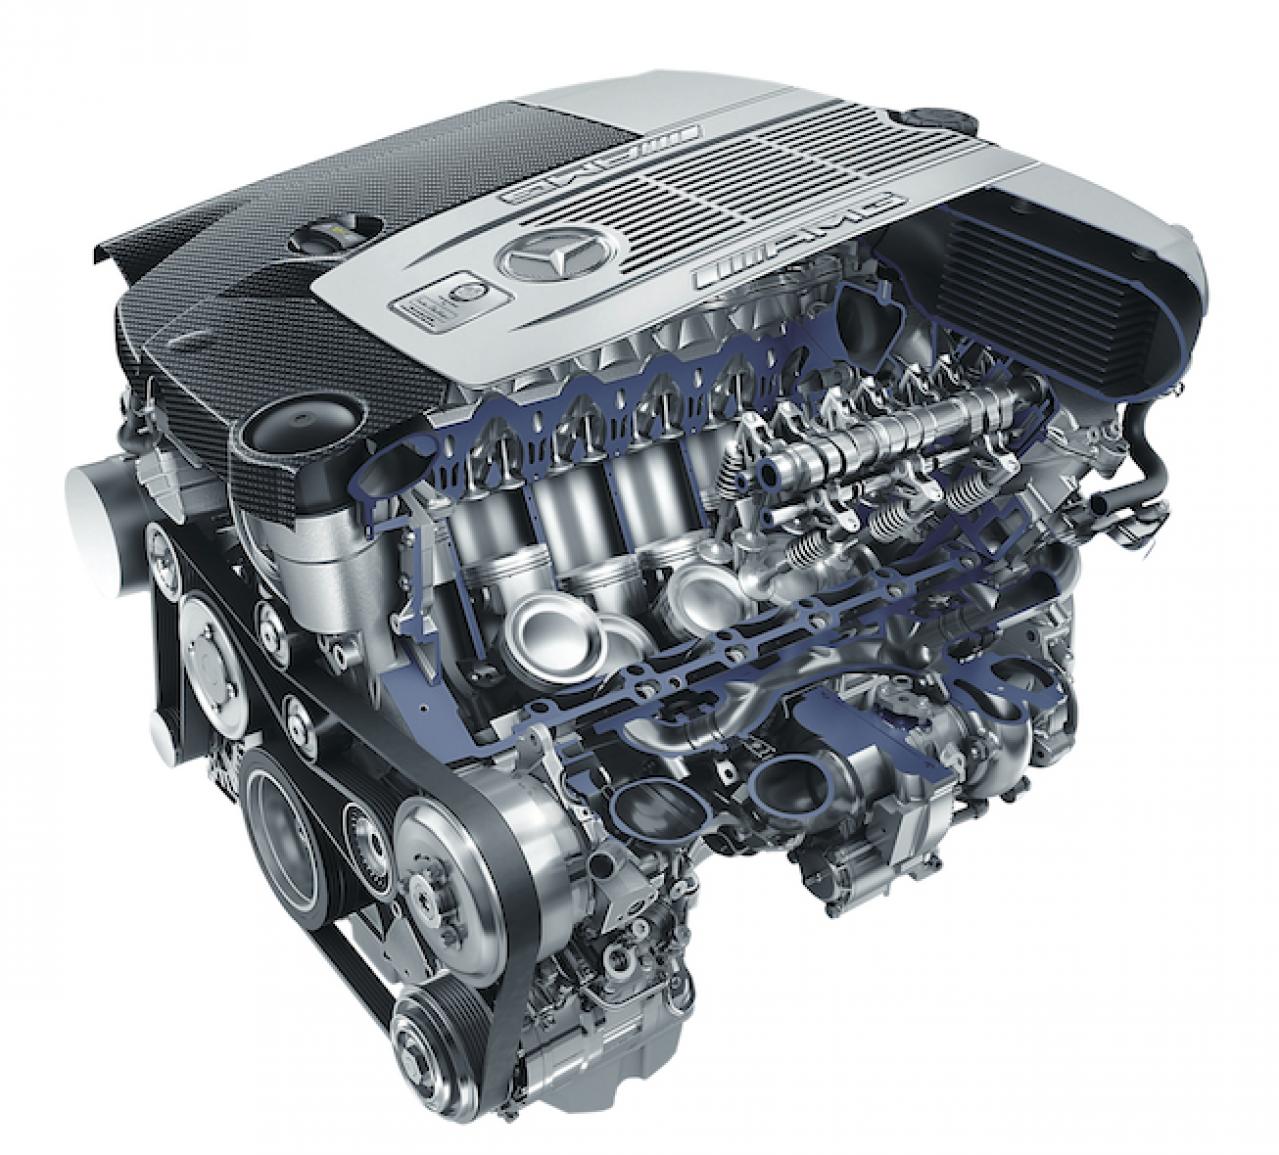 値下げする商品 エアポンプ メルセデスベンツ Sクラス W222 S600 S65AMG M277 M279 V12エンジン  エンジン、過給器、冷却、燃料系パーツ